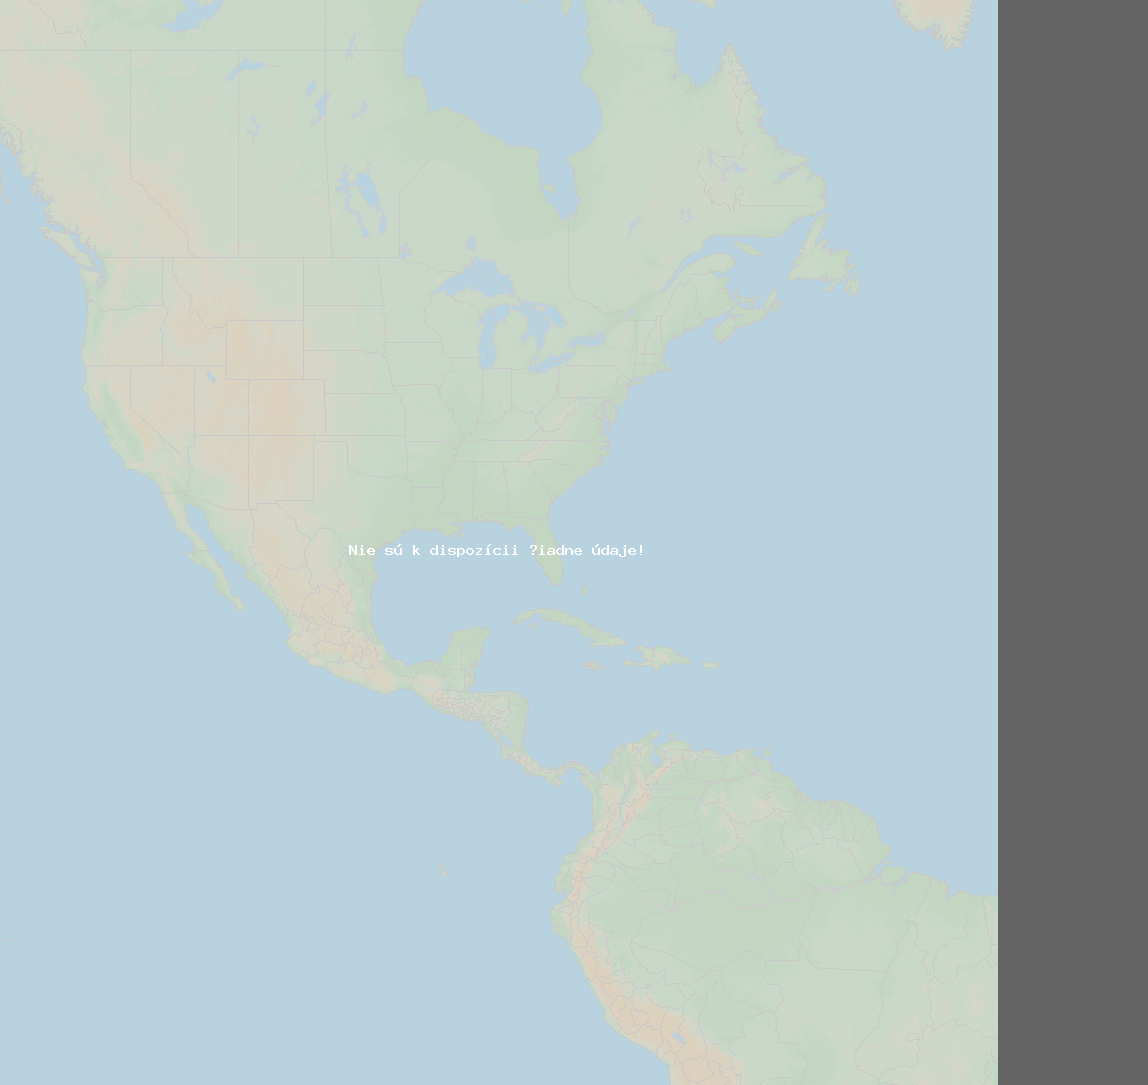 Pomer bleskov (Stanica Baie-Comeau QC) North America 2019 December